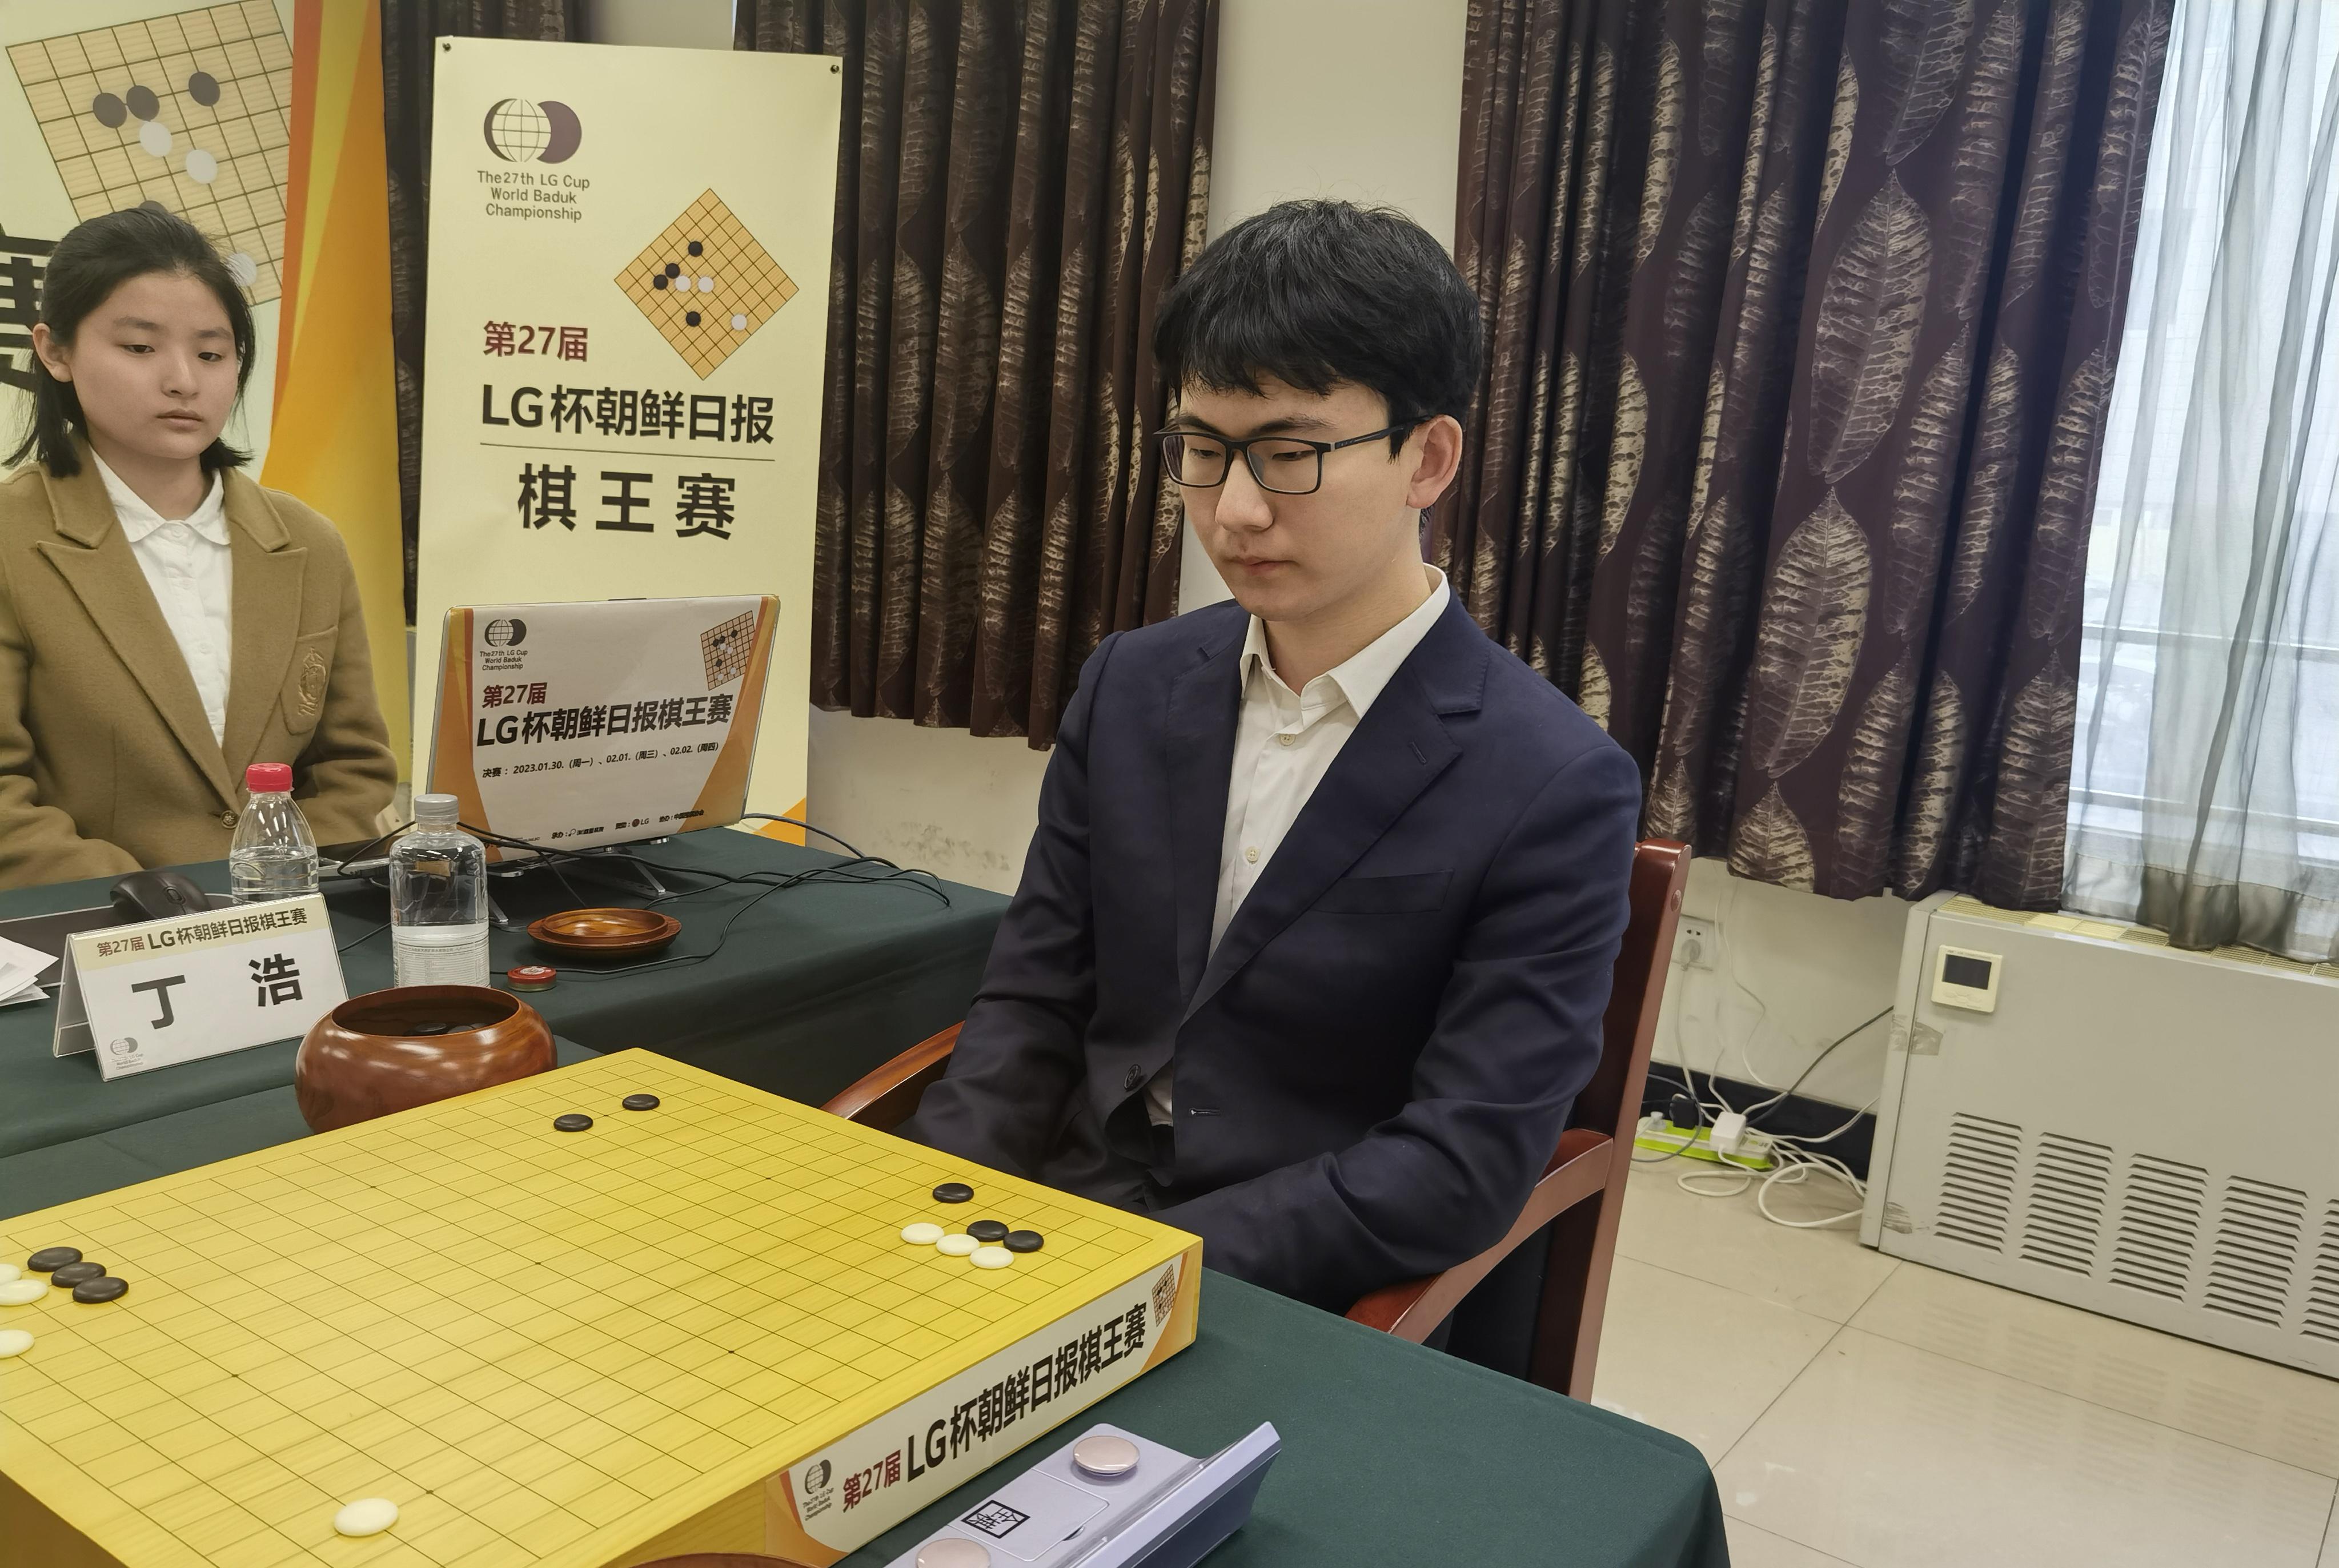 捧得LG杯 丁浩成为中国首位00后围棋世界冠军(1)